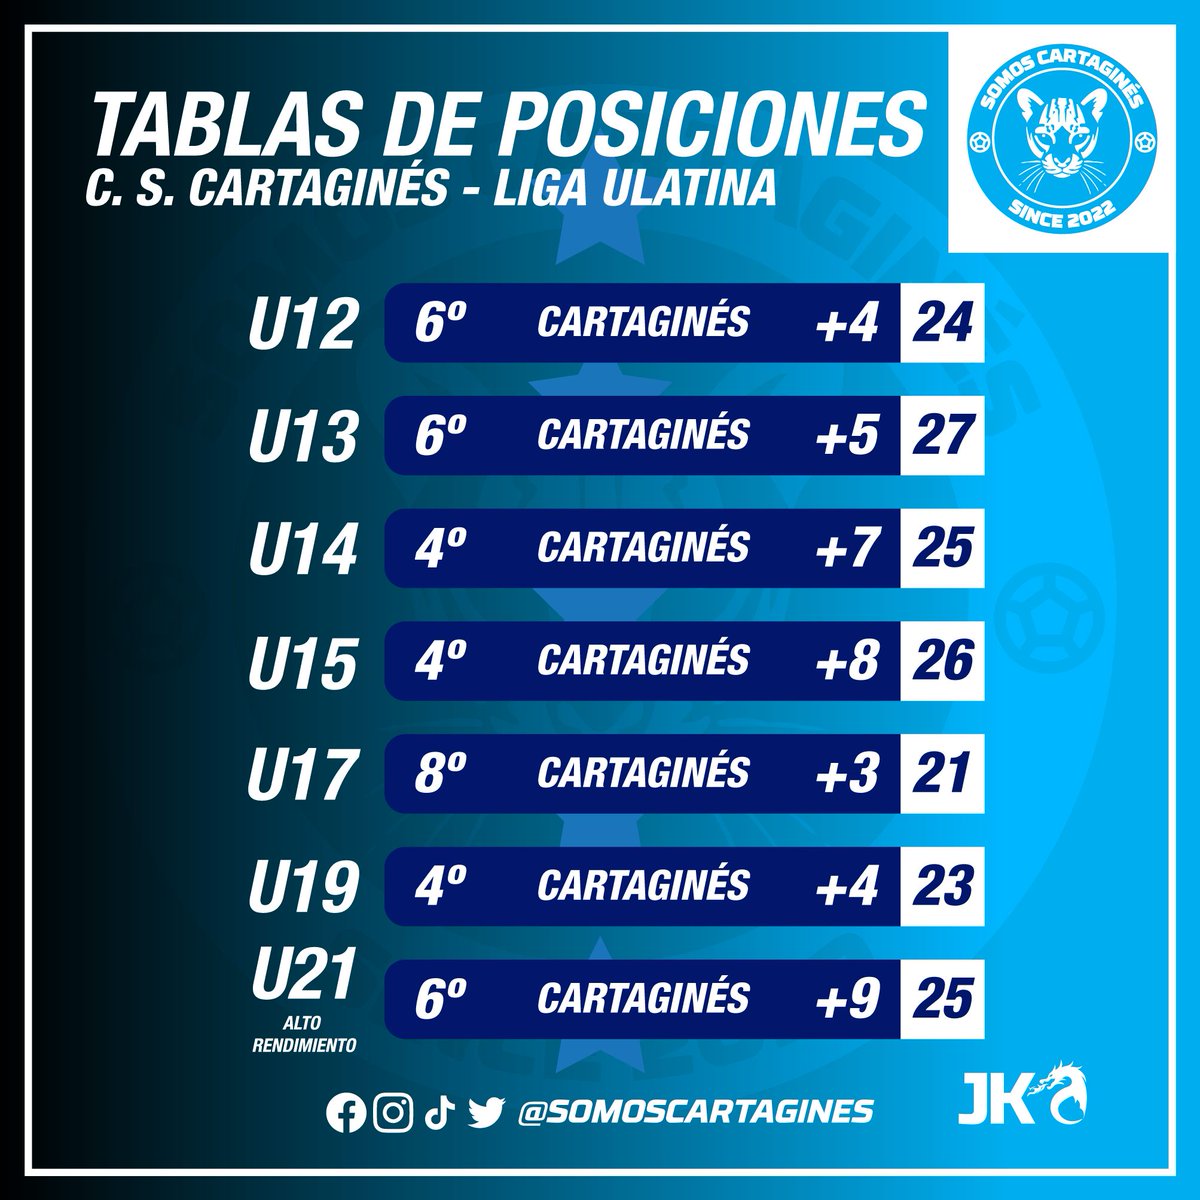 #LigasMenoresCSC
Estas son las posiciones finales de las Ligas Menores del Cartaginés en la Liga Ulatina, todos están clasificados a los cuartos de final.
#1CSC #VamosCartagines